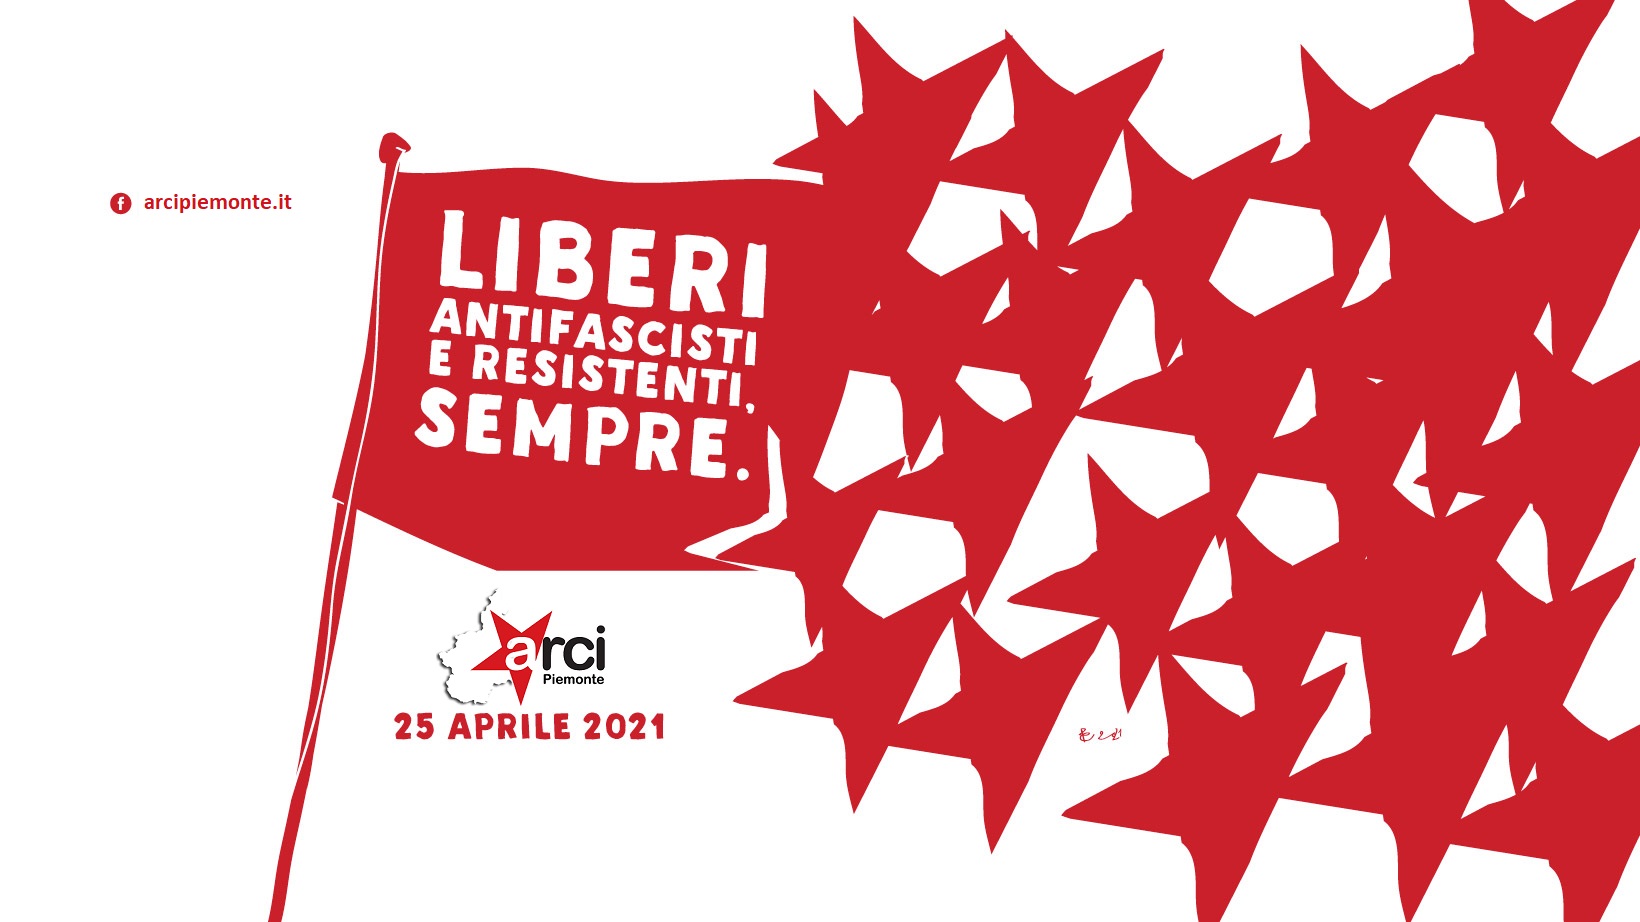 Liber*, antifascist* e resistenti. Sempre. 25 aprile 2021 ★ il programma ARCI in Piemonte